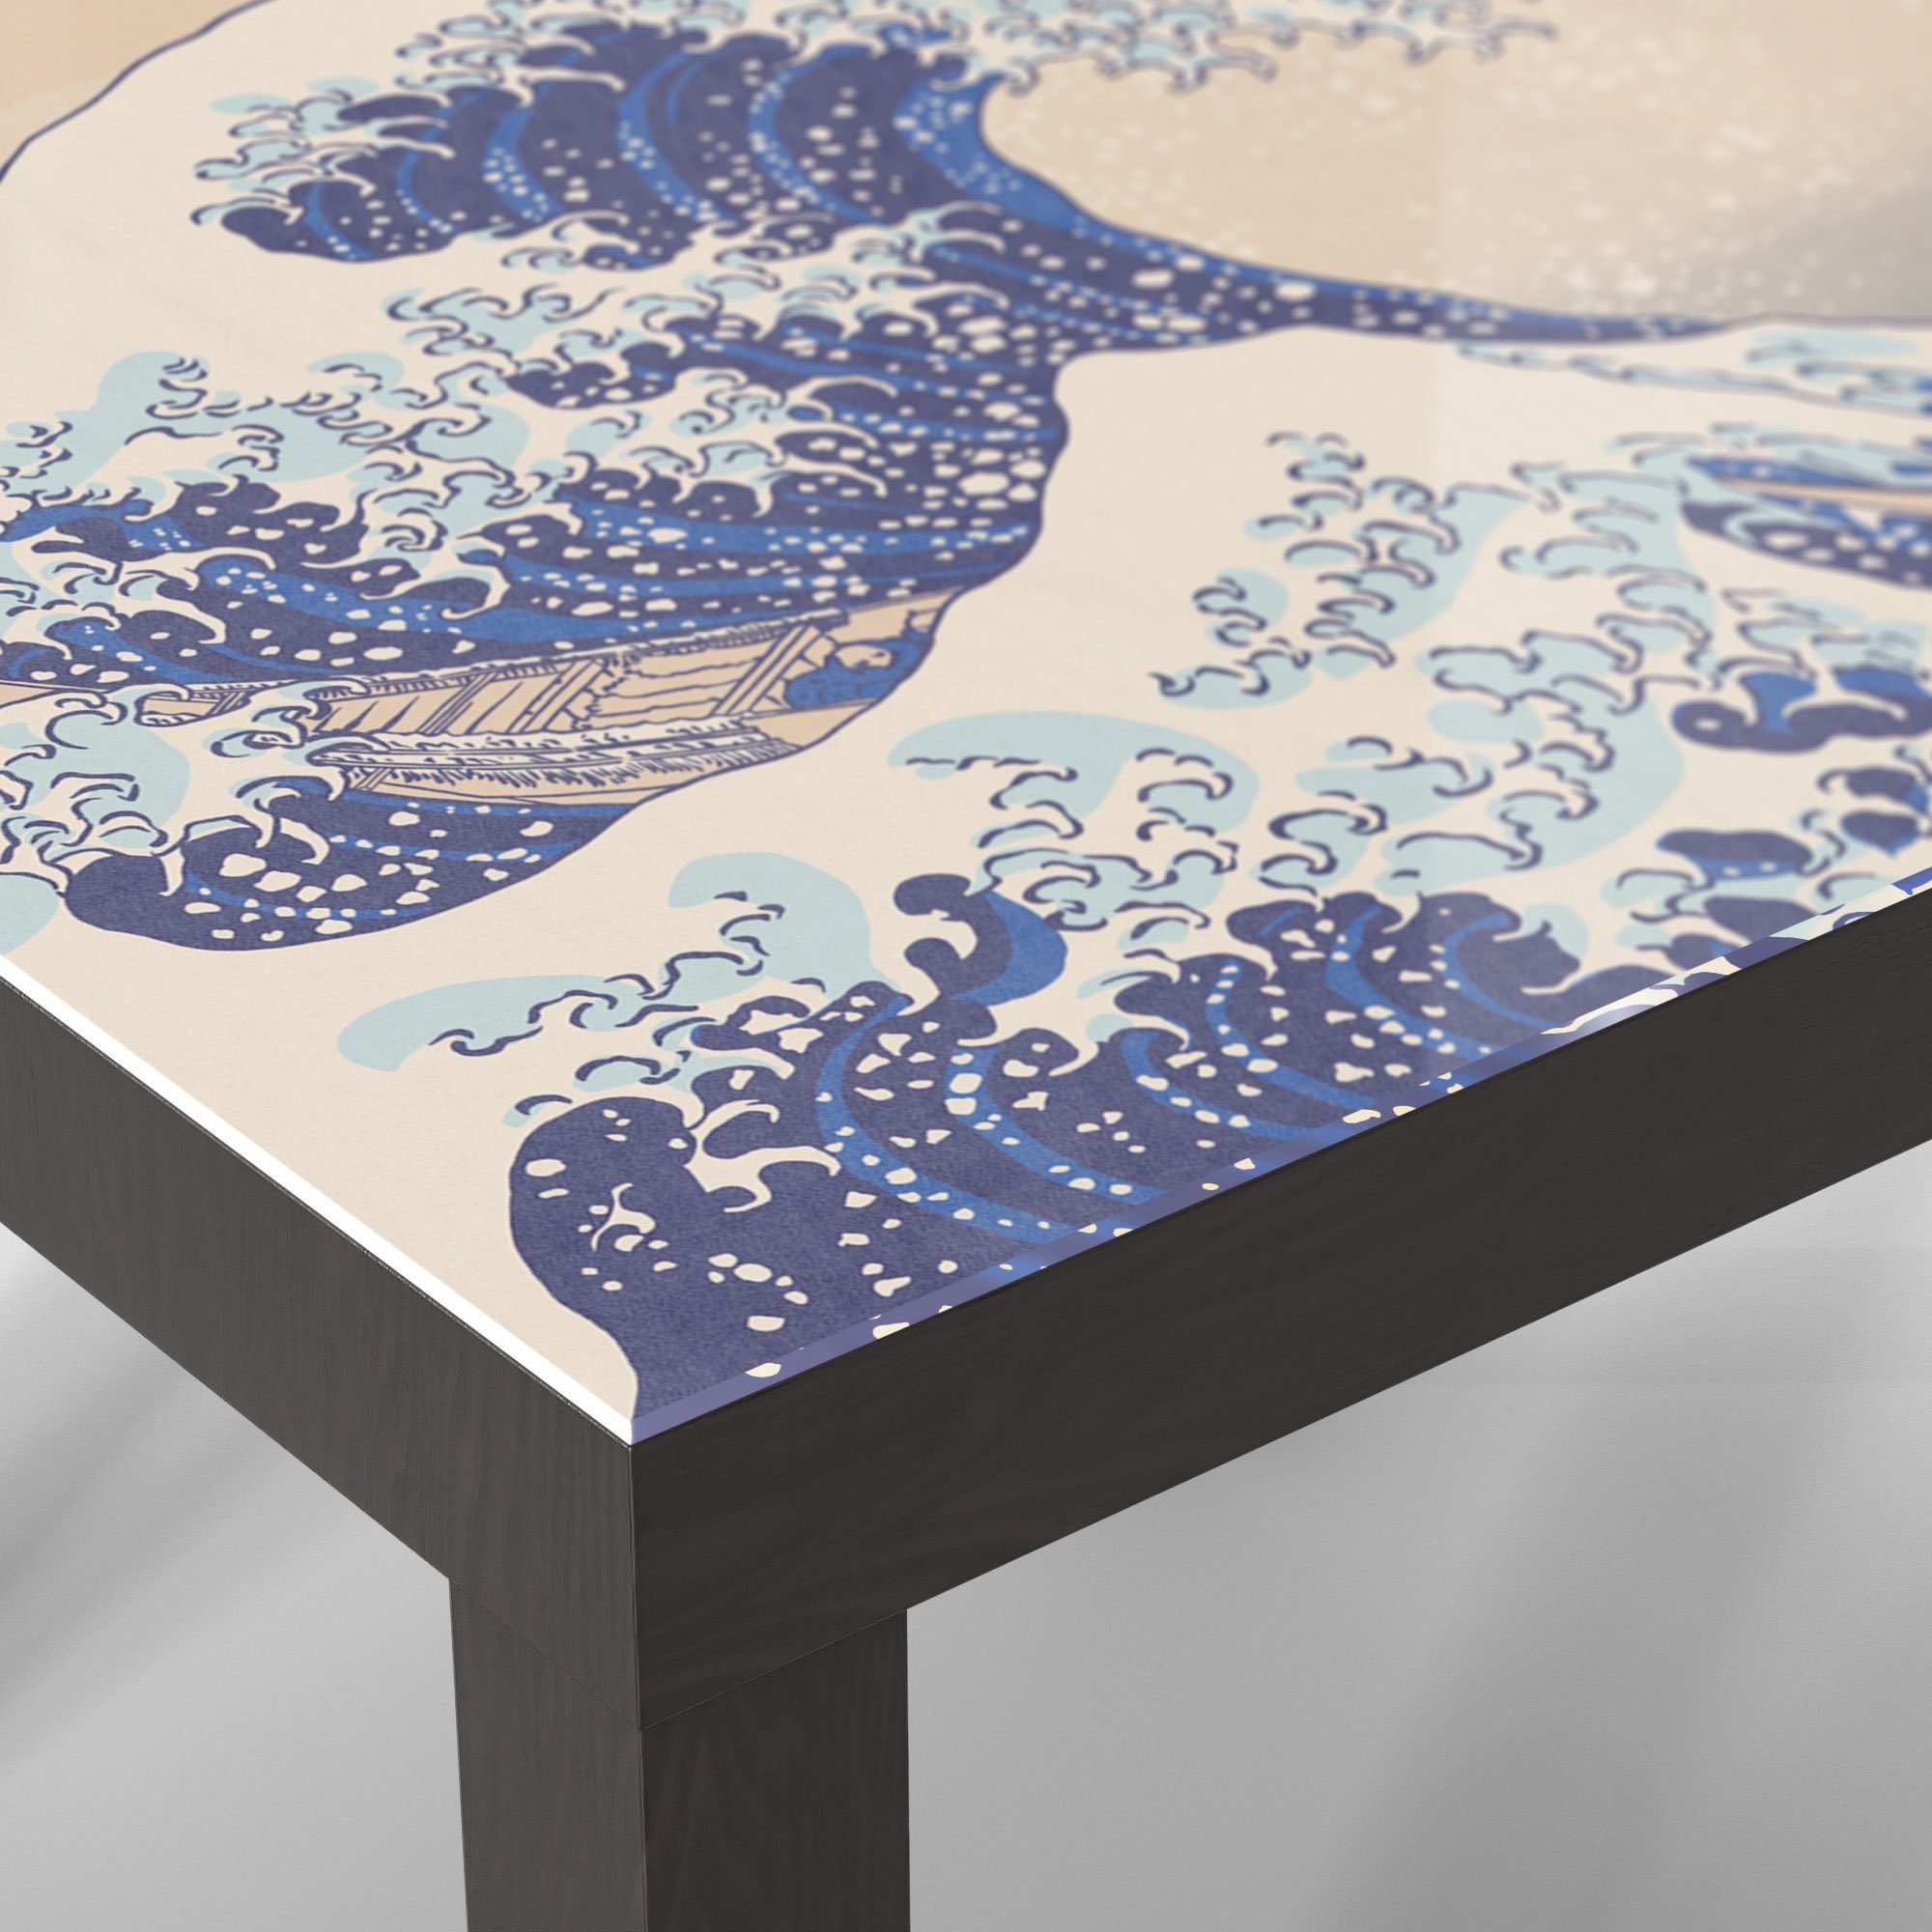 Kanagawa', DEQORI Glastisch Schwarz Couchtisch vor 'Große Welle Beistelltisch Glas modern